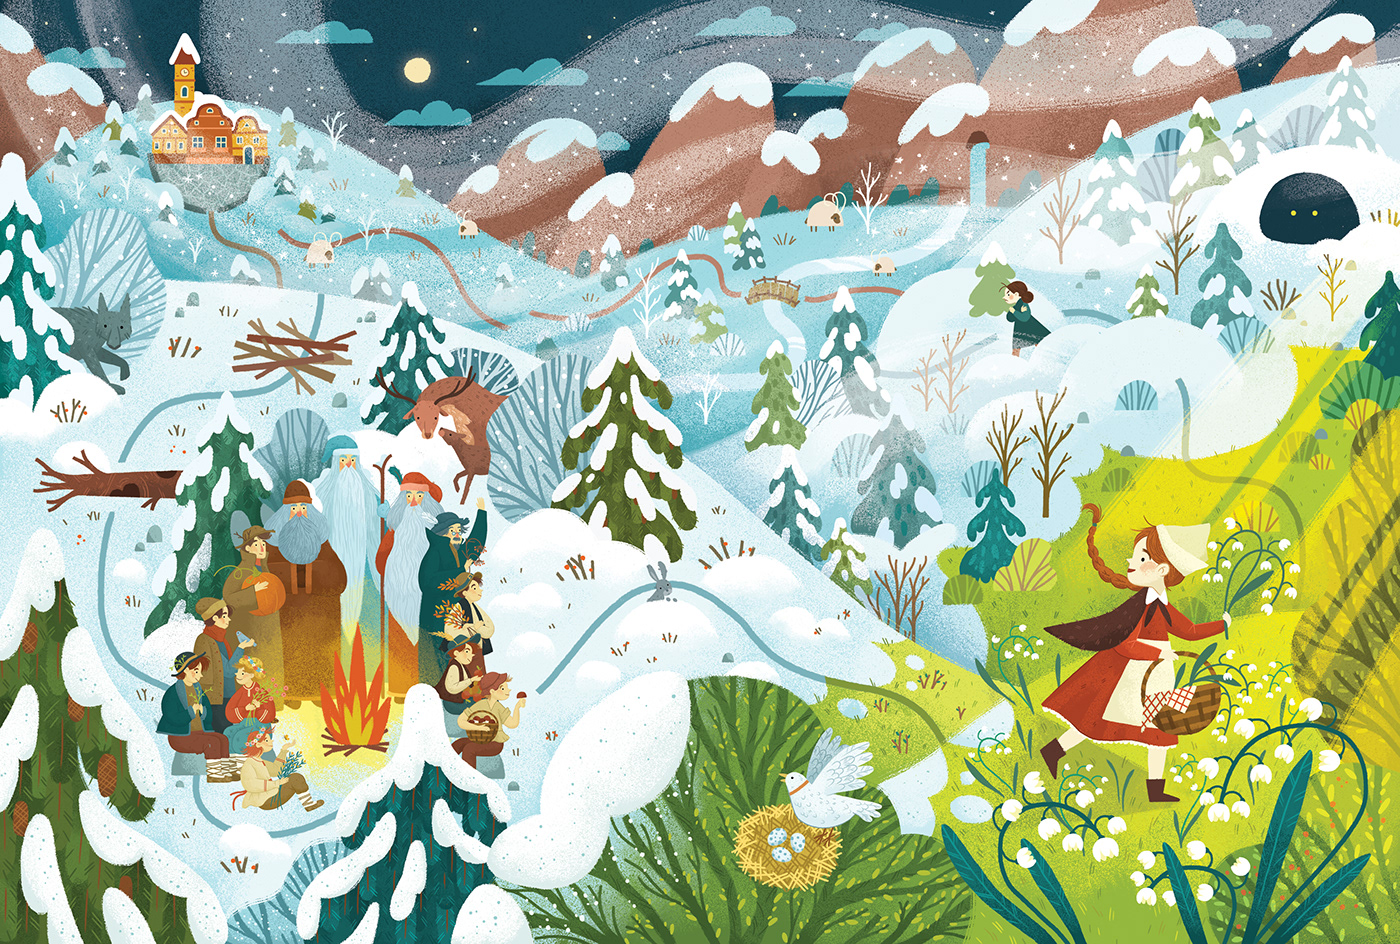 ILLUSTRATION  digital illustration children illustration children's book fairytale Folklore Picture book book illustration Christmas Wimmelbuch